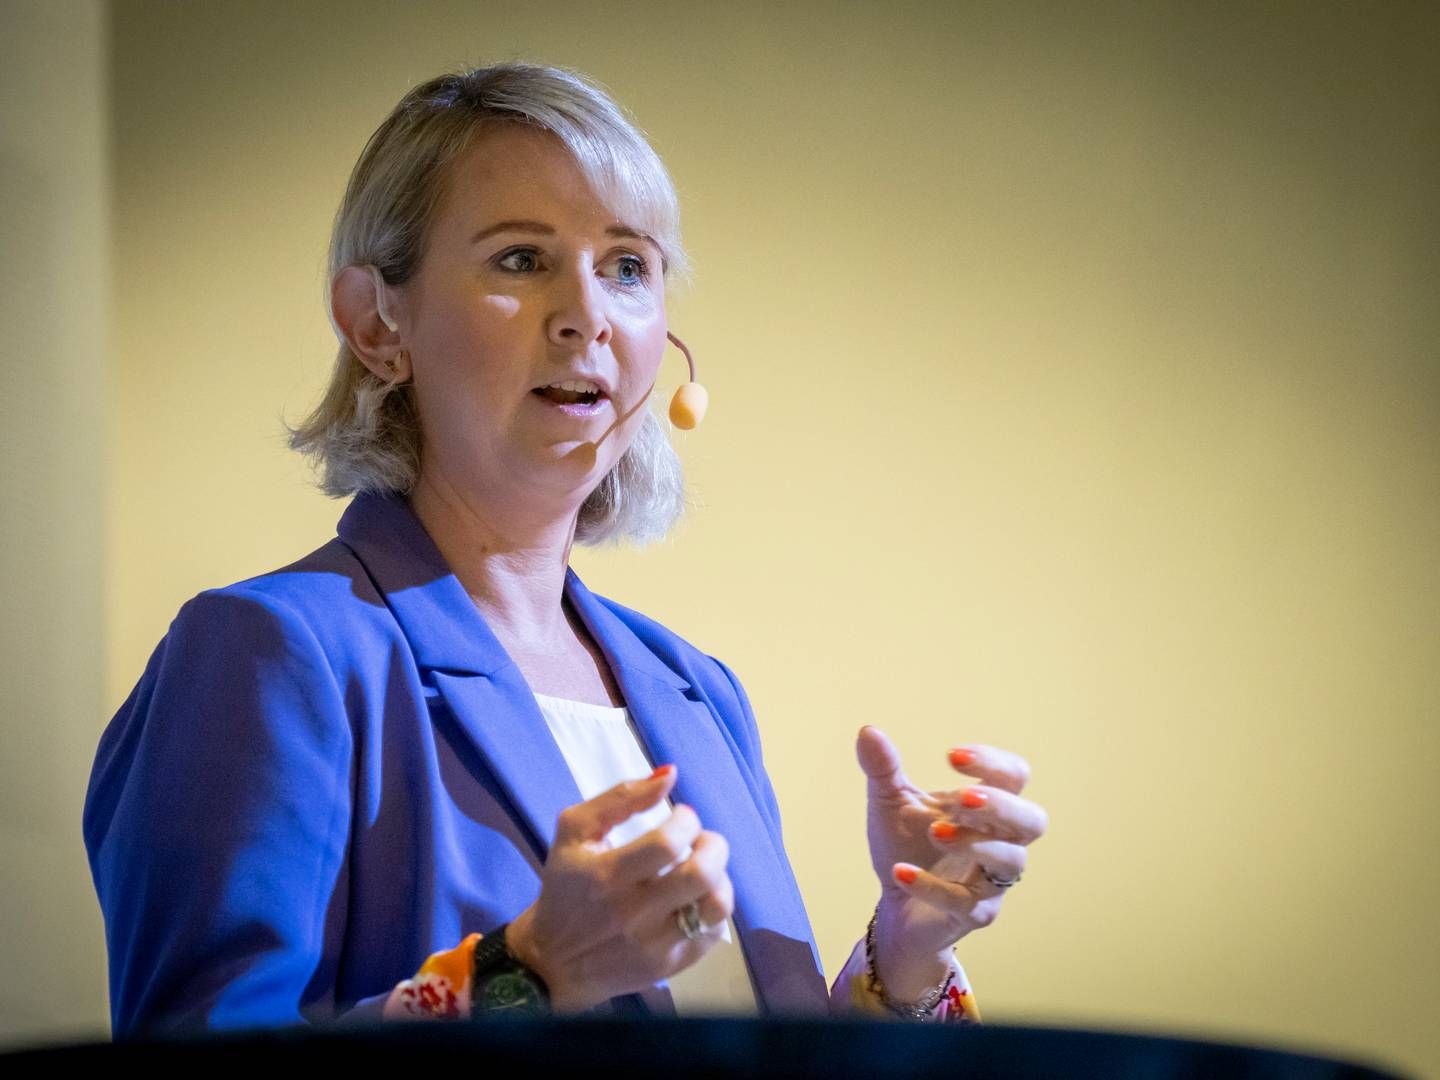 ER BEKYMRET: Sofie Nystrøm, sjef i Nasjonal sikkerhetsmyndighet (NSM) | Foto: Heiko Junge / NTB